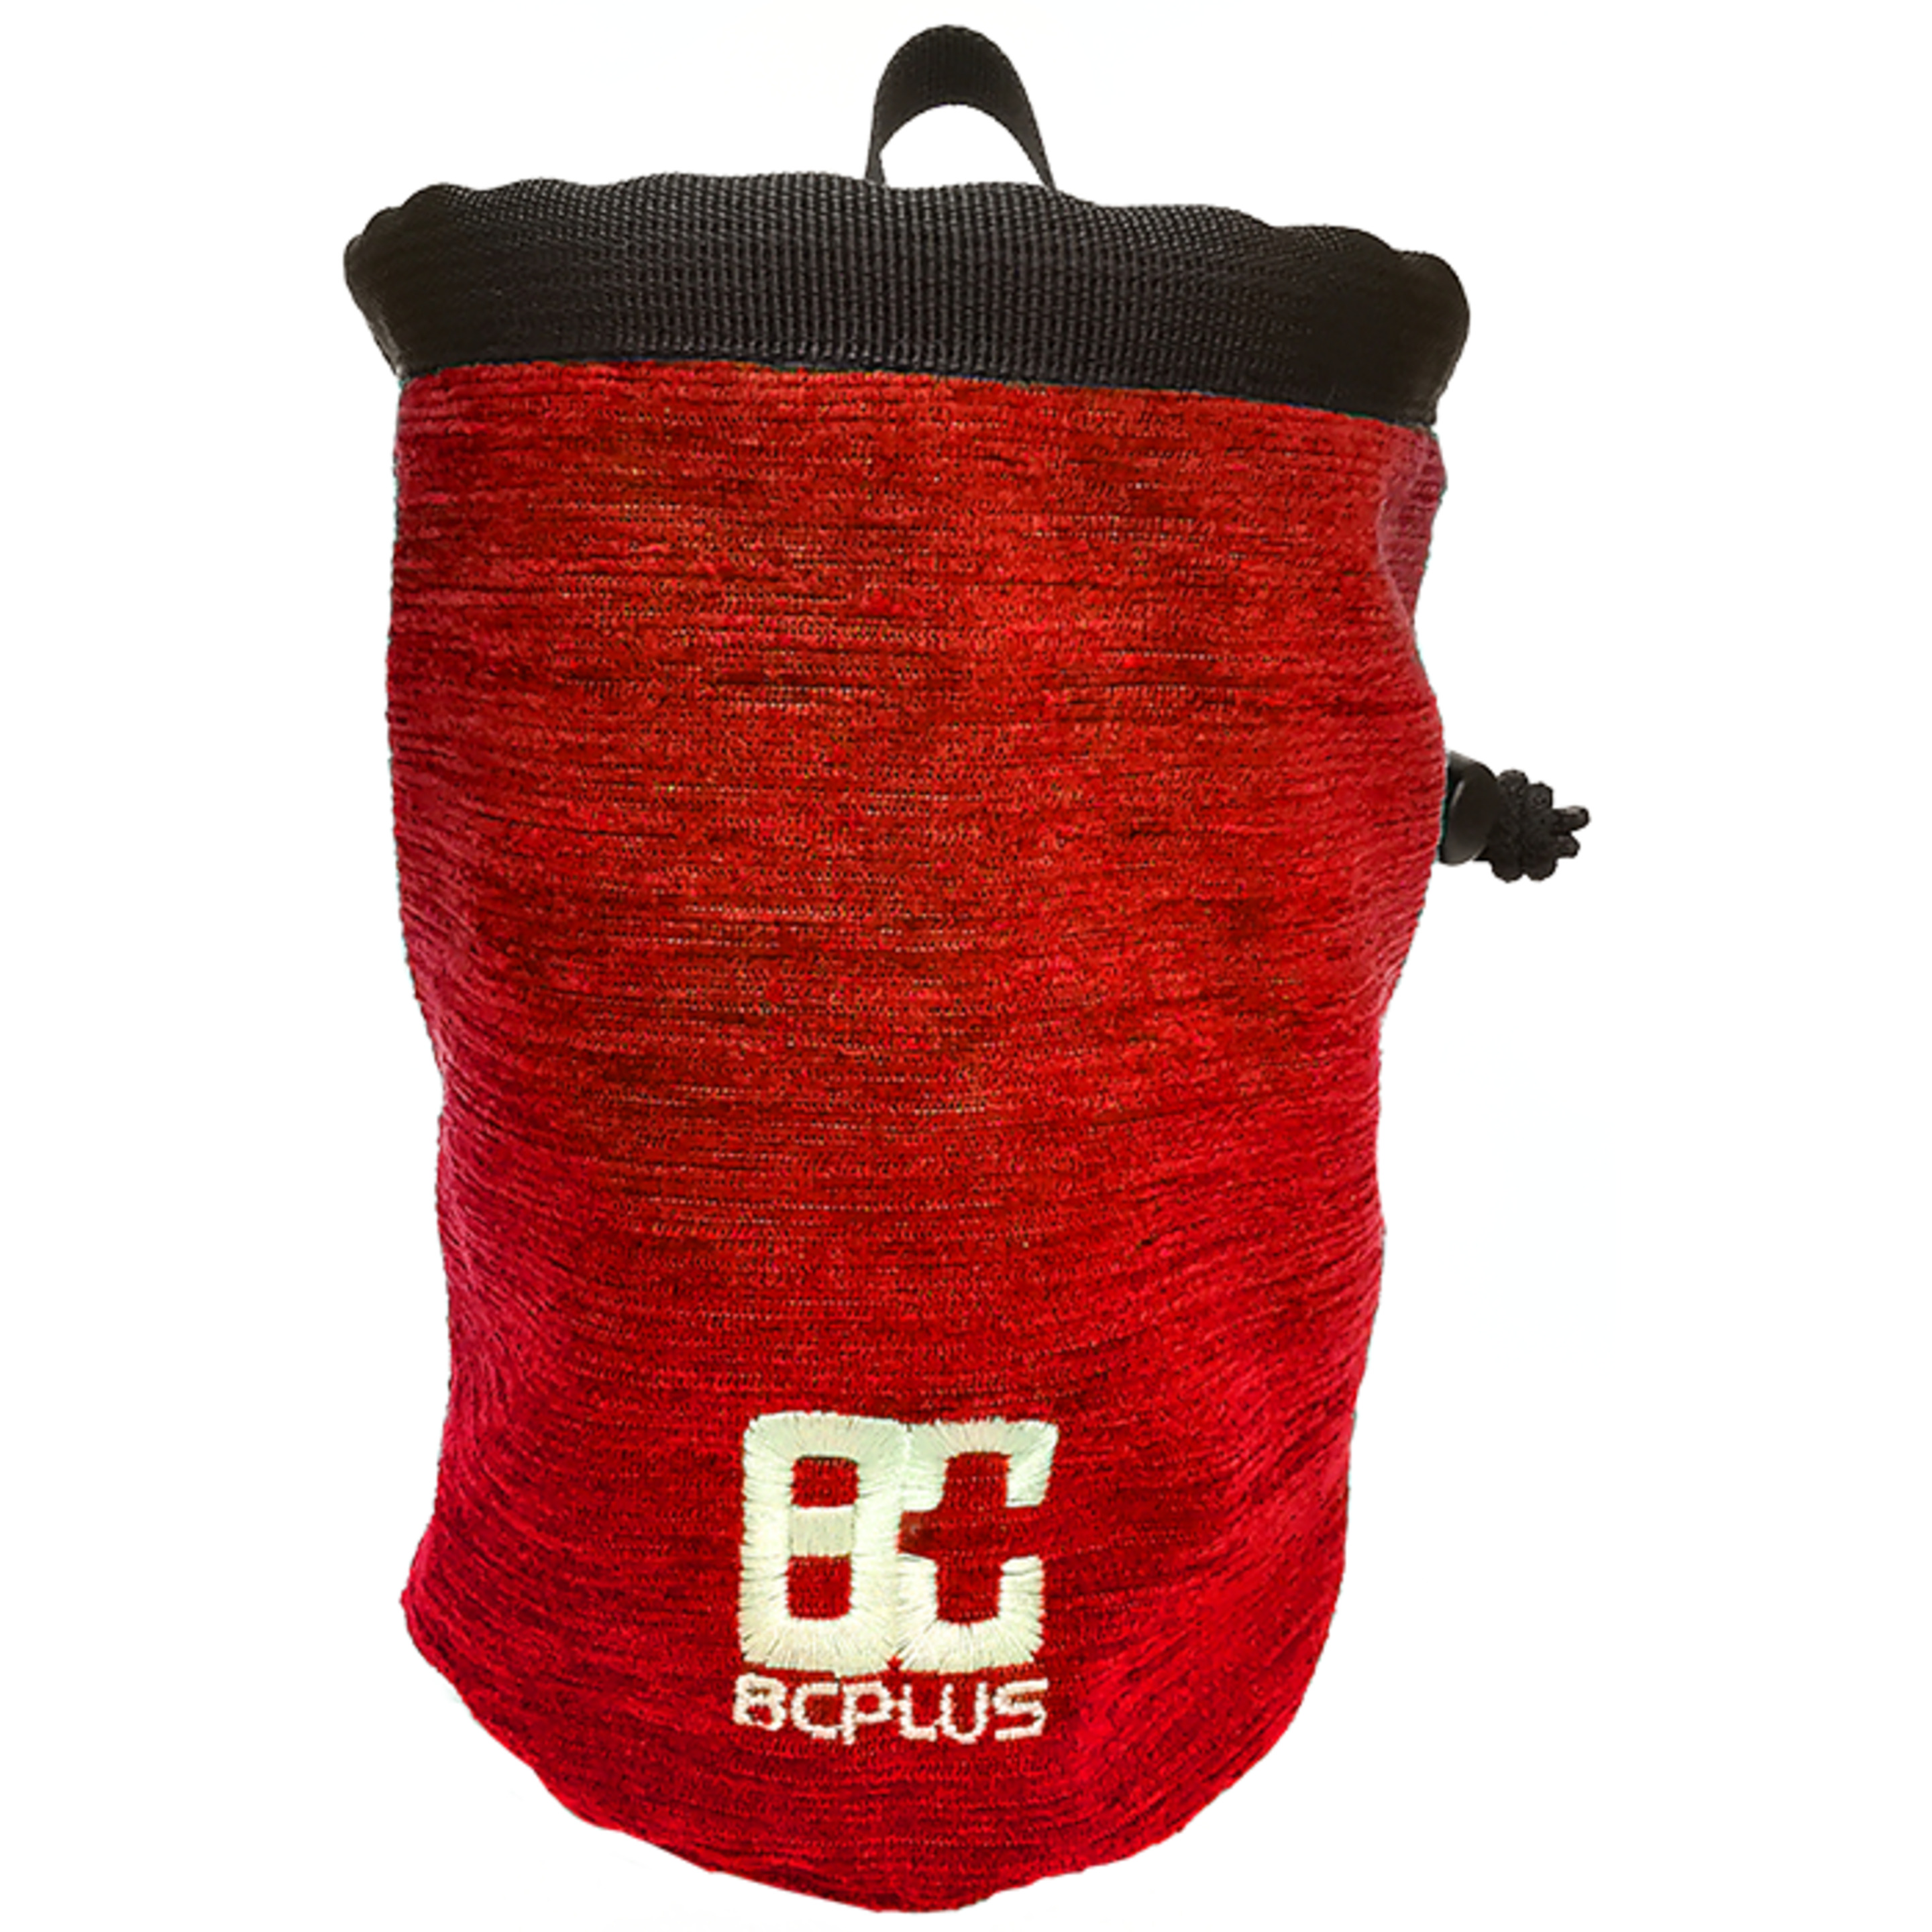 Bolsa De Magnesio Con Cinturón Amazon Rojo 8cplus - rojo - 